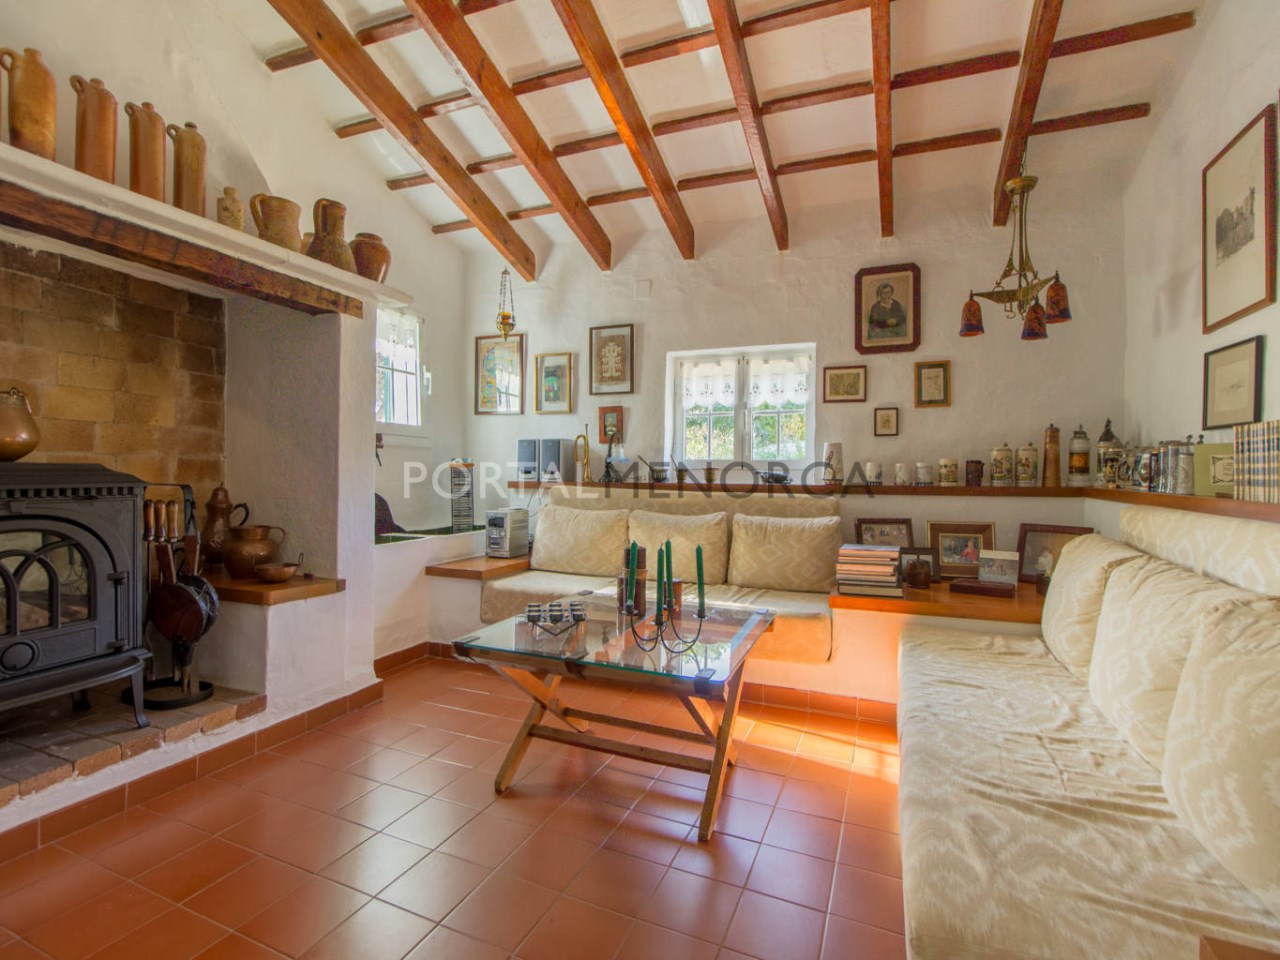 Casa de campo en venta en Menorca - Planta baja (1)